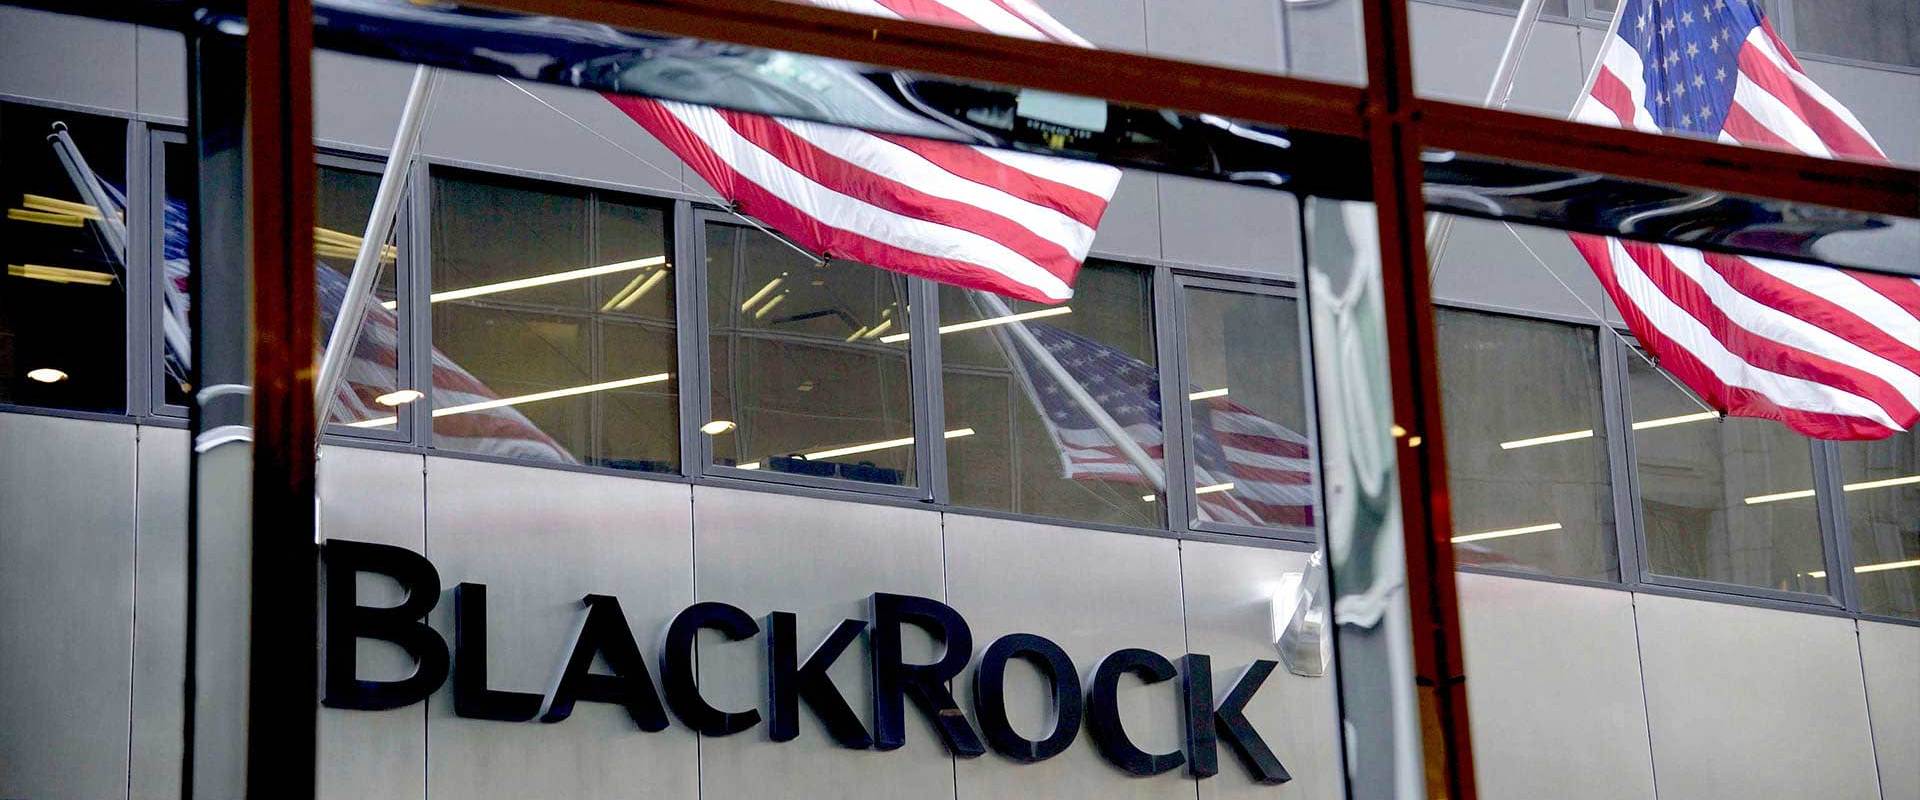 Blackrock - die unheimliche Macht eines Finanzkonzerns   